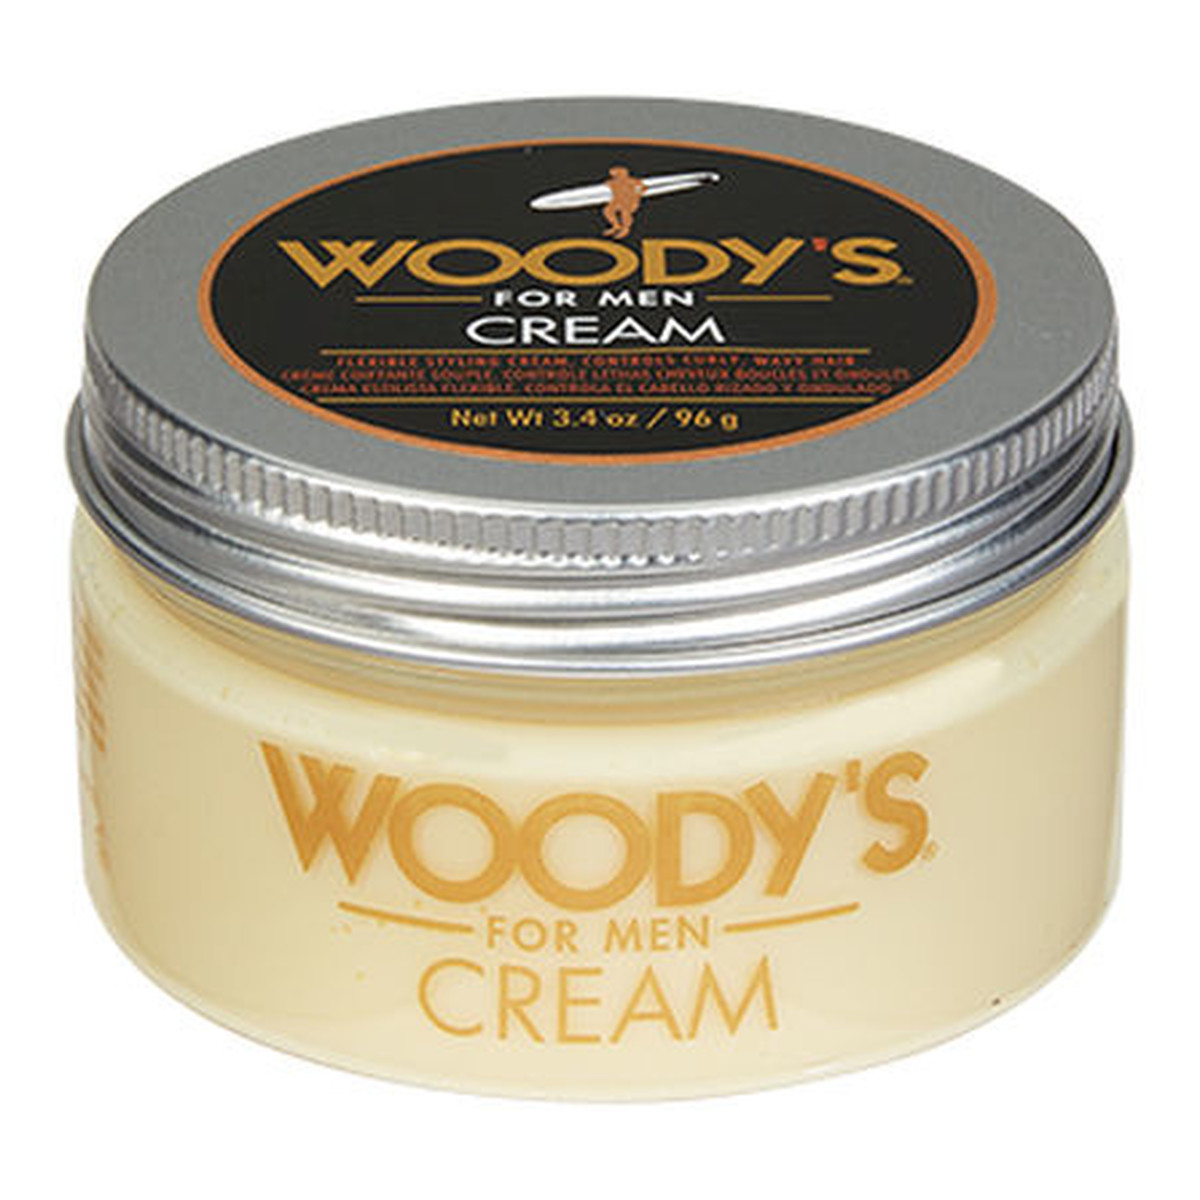 Woody’s Cream nowoczesny krem do kreatywnej stylizacji włosów 96g